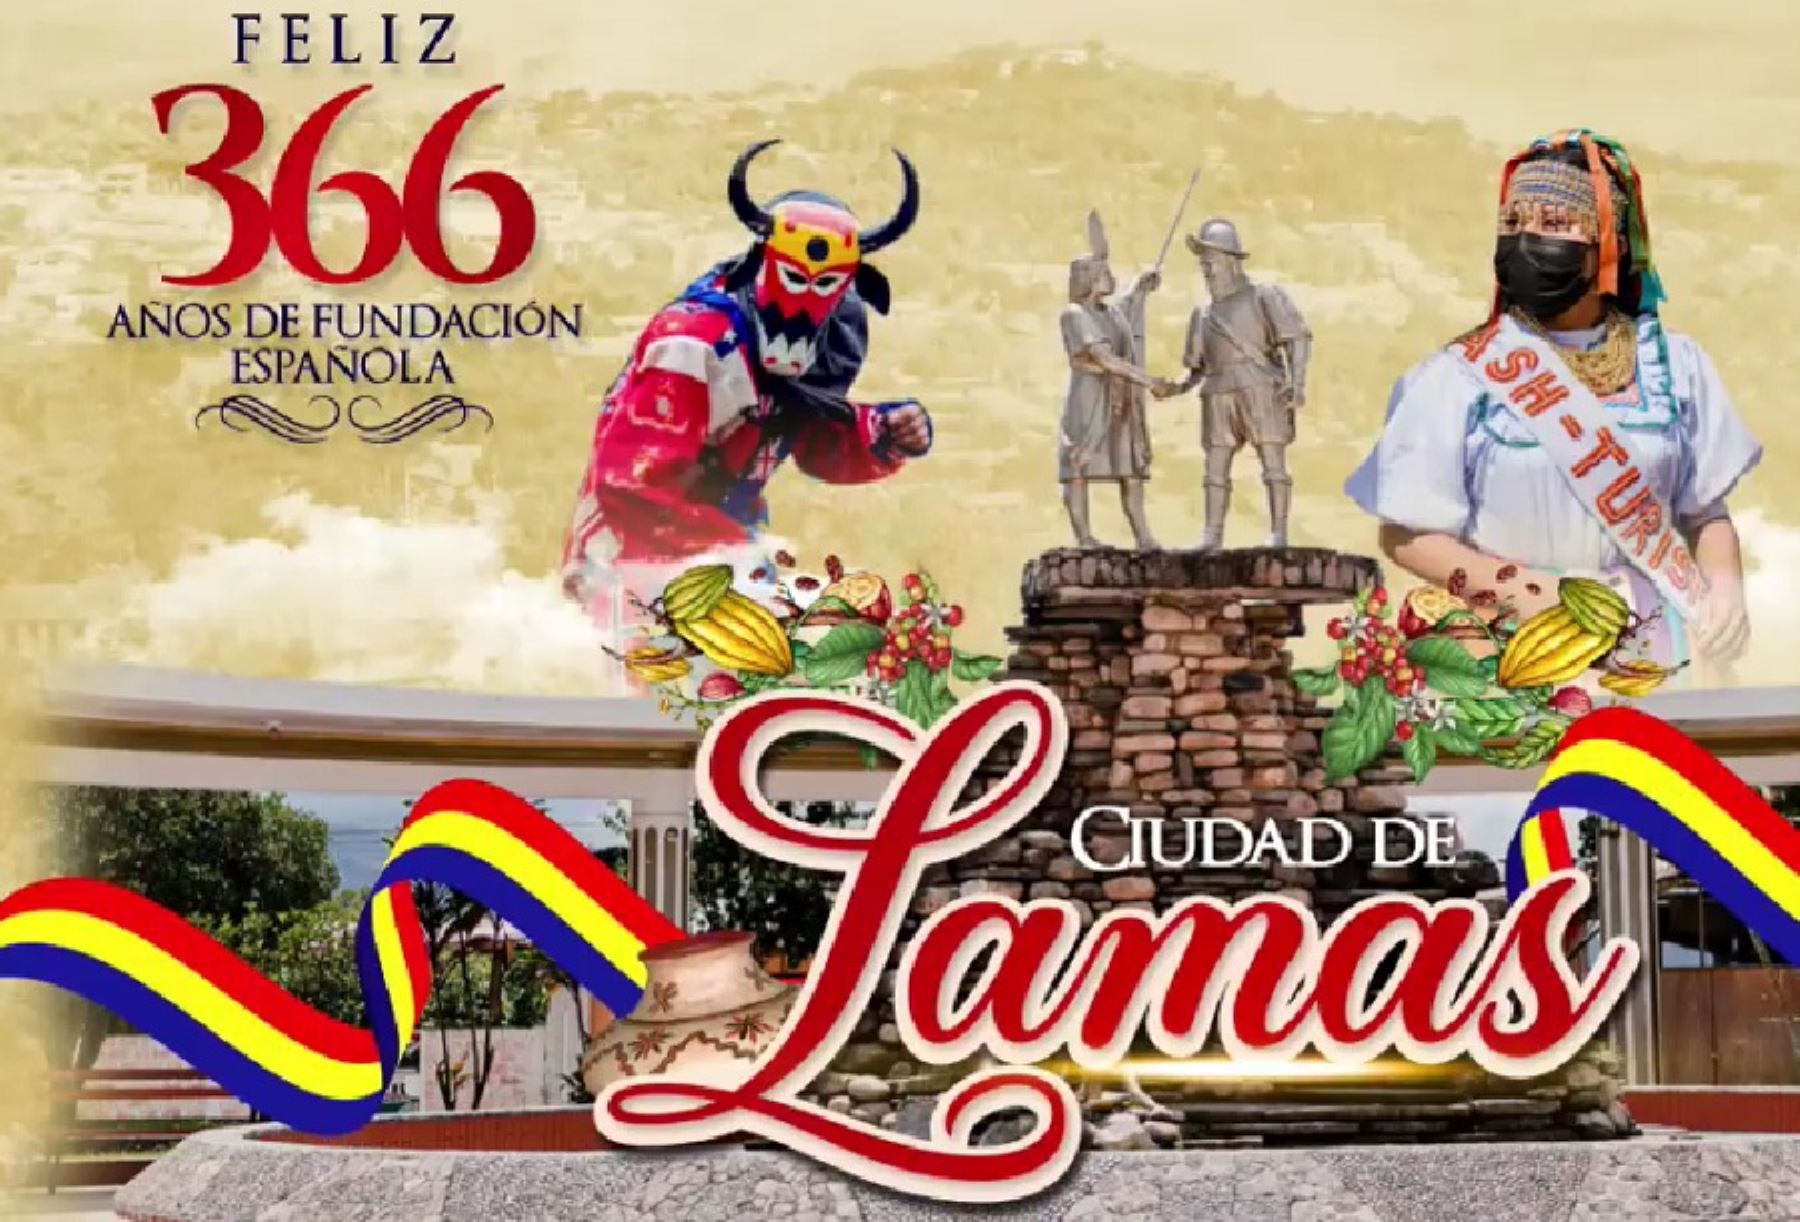 Reconocida como la “Capital folclórica de la región San Martín”, la ciudad de Lamas celebra su 366 aniversario de fundación española, lo que la convierte en una de las primeras urbes creadas en la selva peruana.